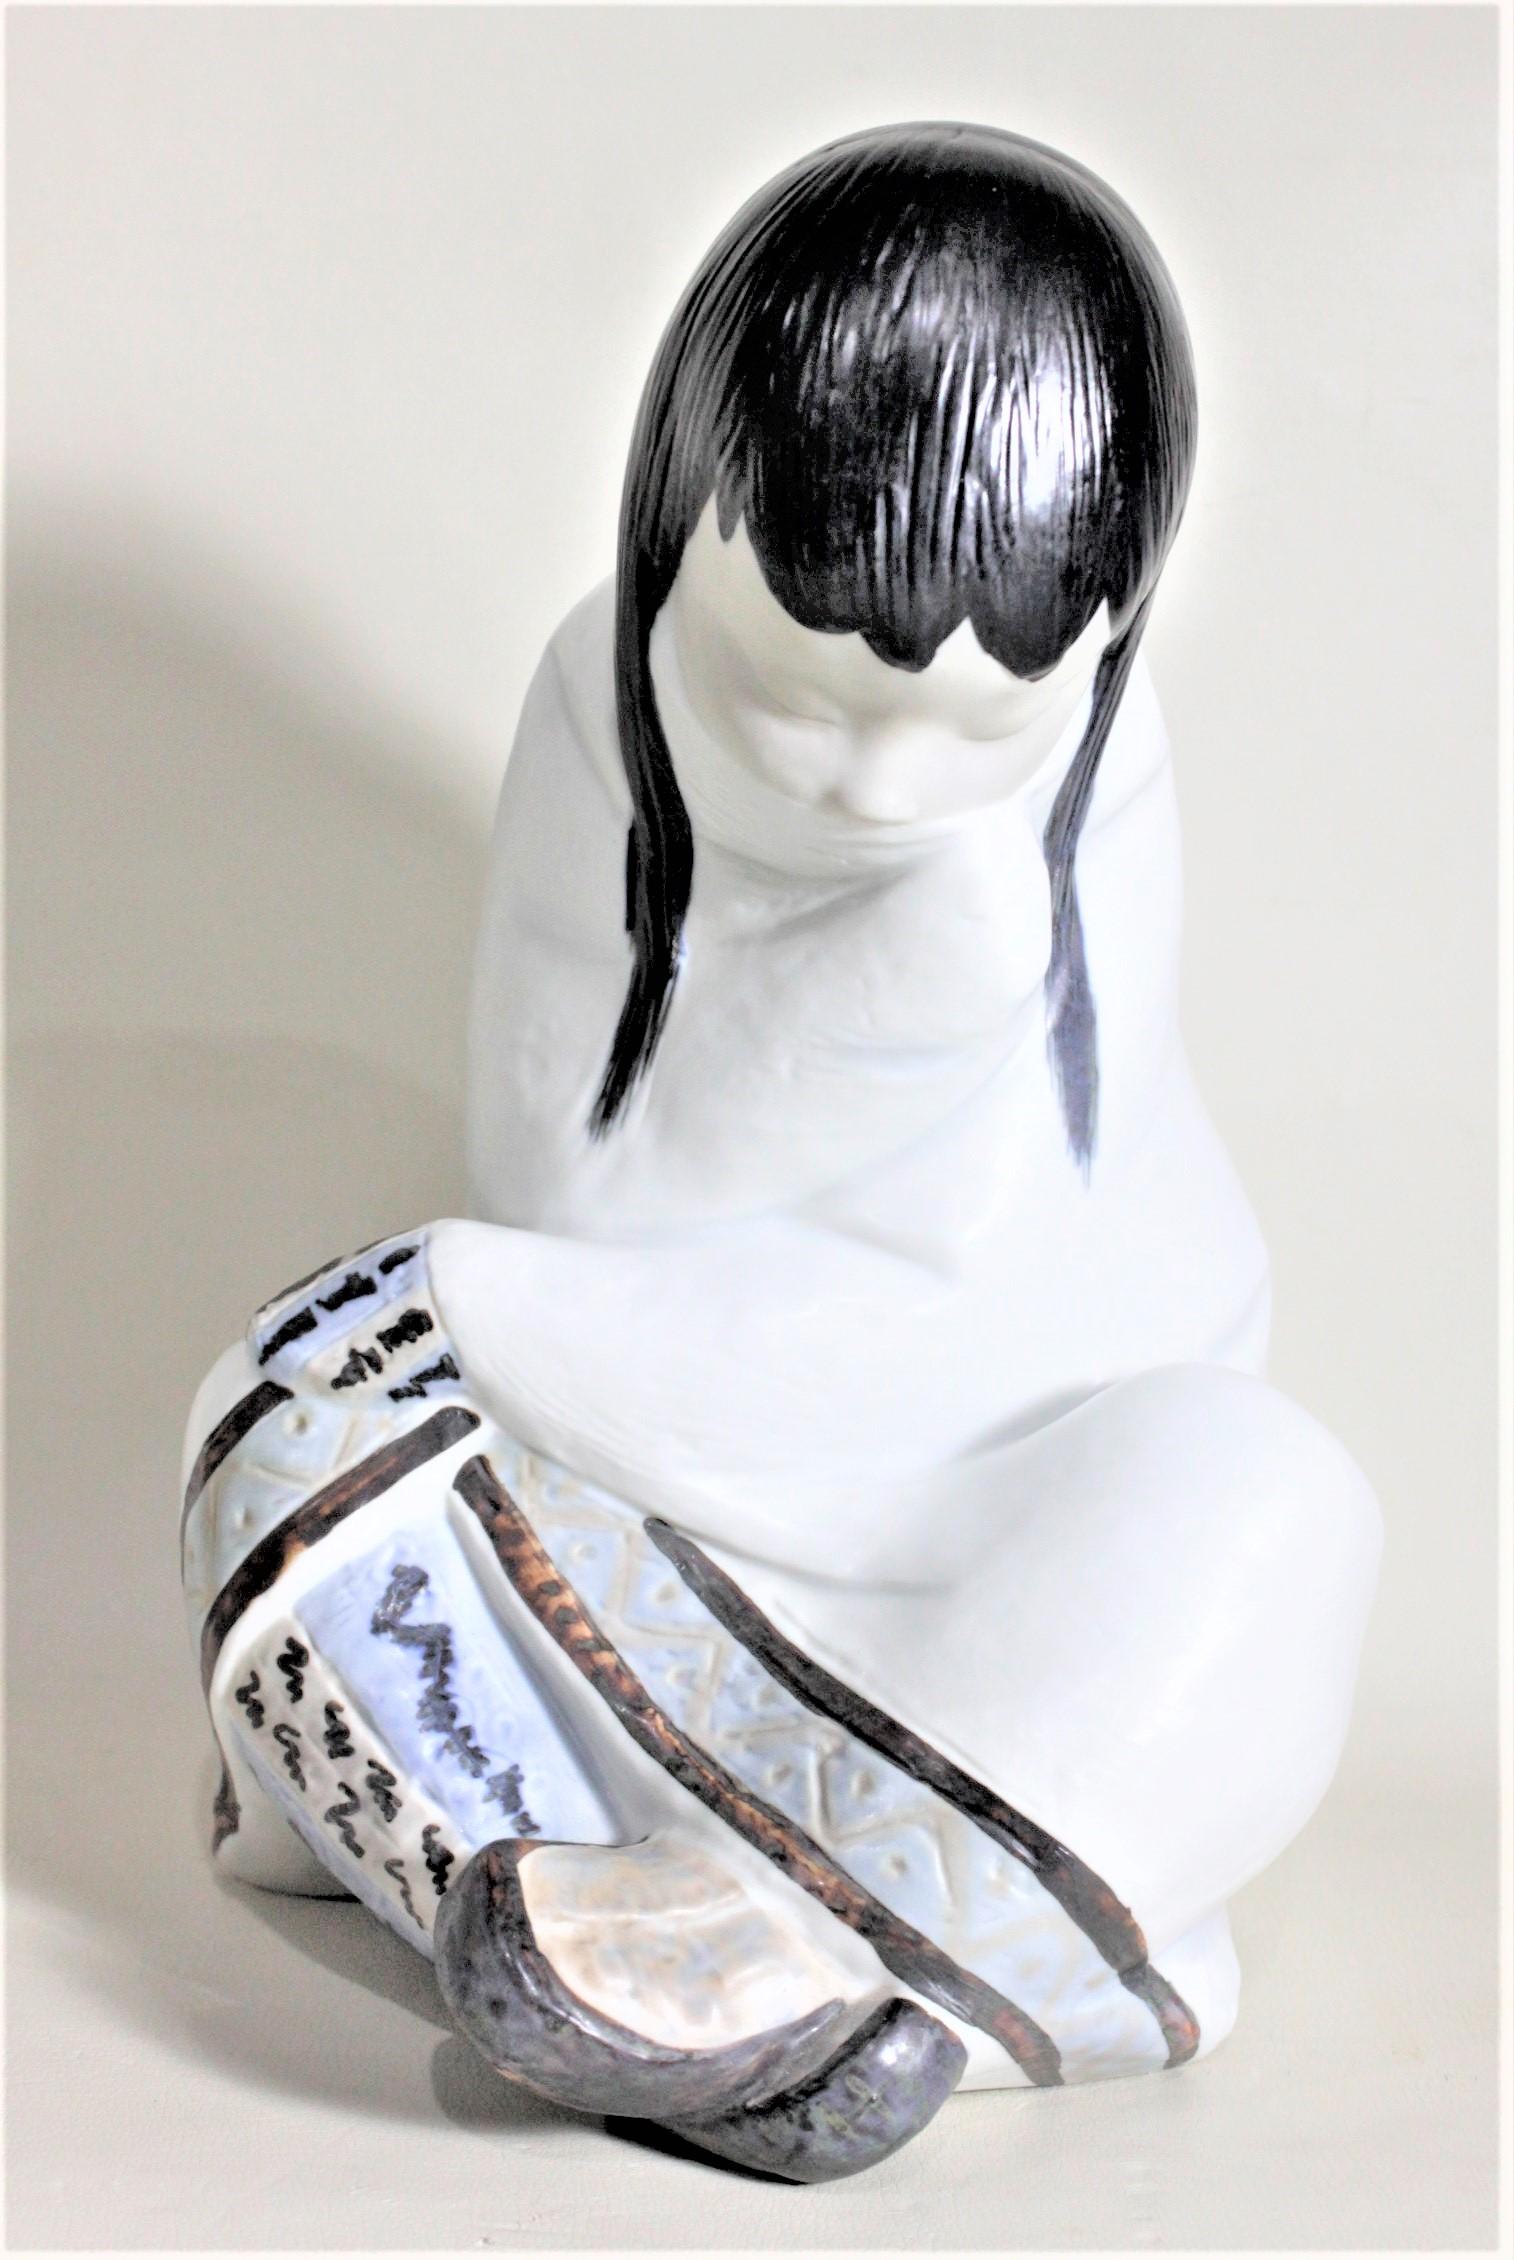 Diese sehr große, handbemalte Porzellanfigur wurde von der renommierten Firma Llladro in Spanien etwa 1985 hergestellt. Die Figur stellt ein junges Inuit-Mädchen dar, das im Schneidersitz mit gesenktem Kopf sitzt. Die handgemalten Details sind in